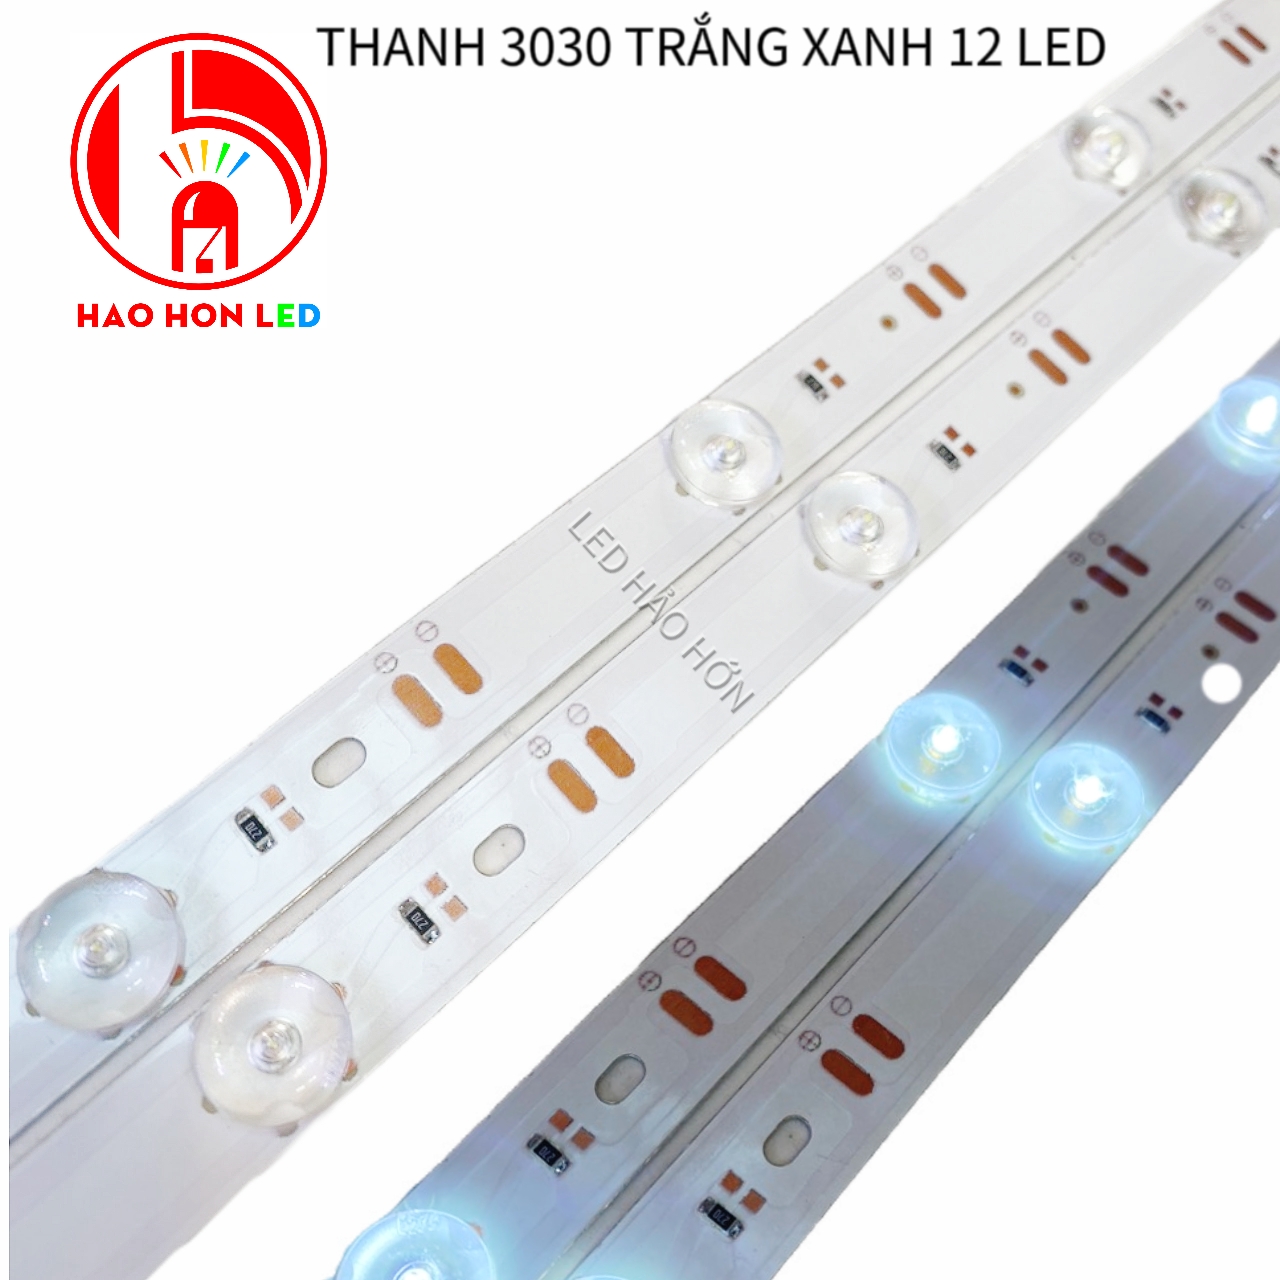 THANH 3030 TRẮNG XANH 12 LED